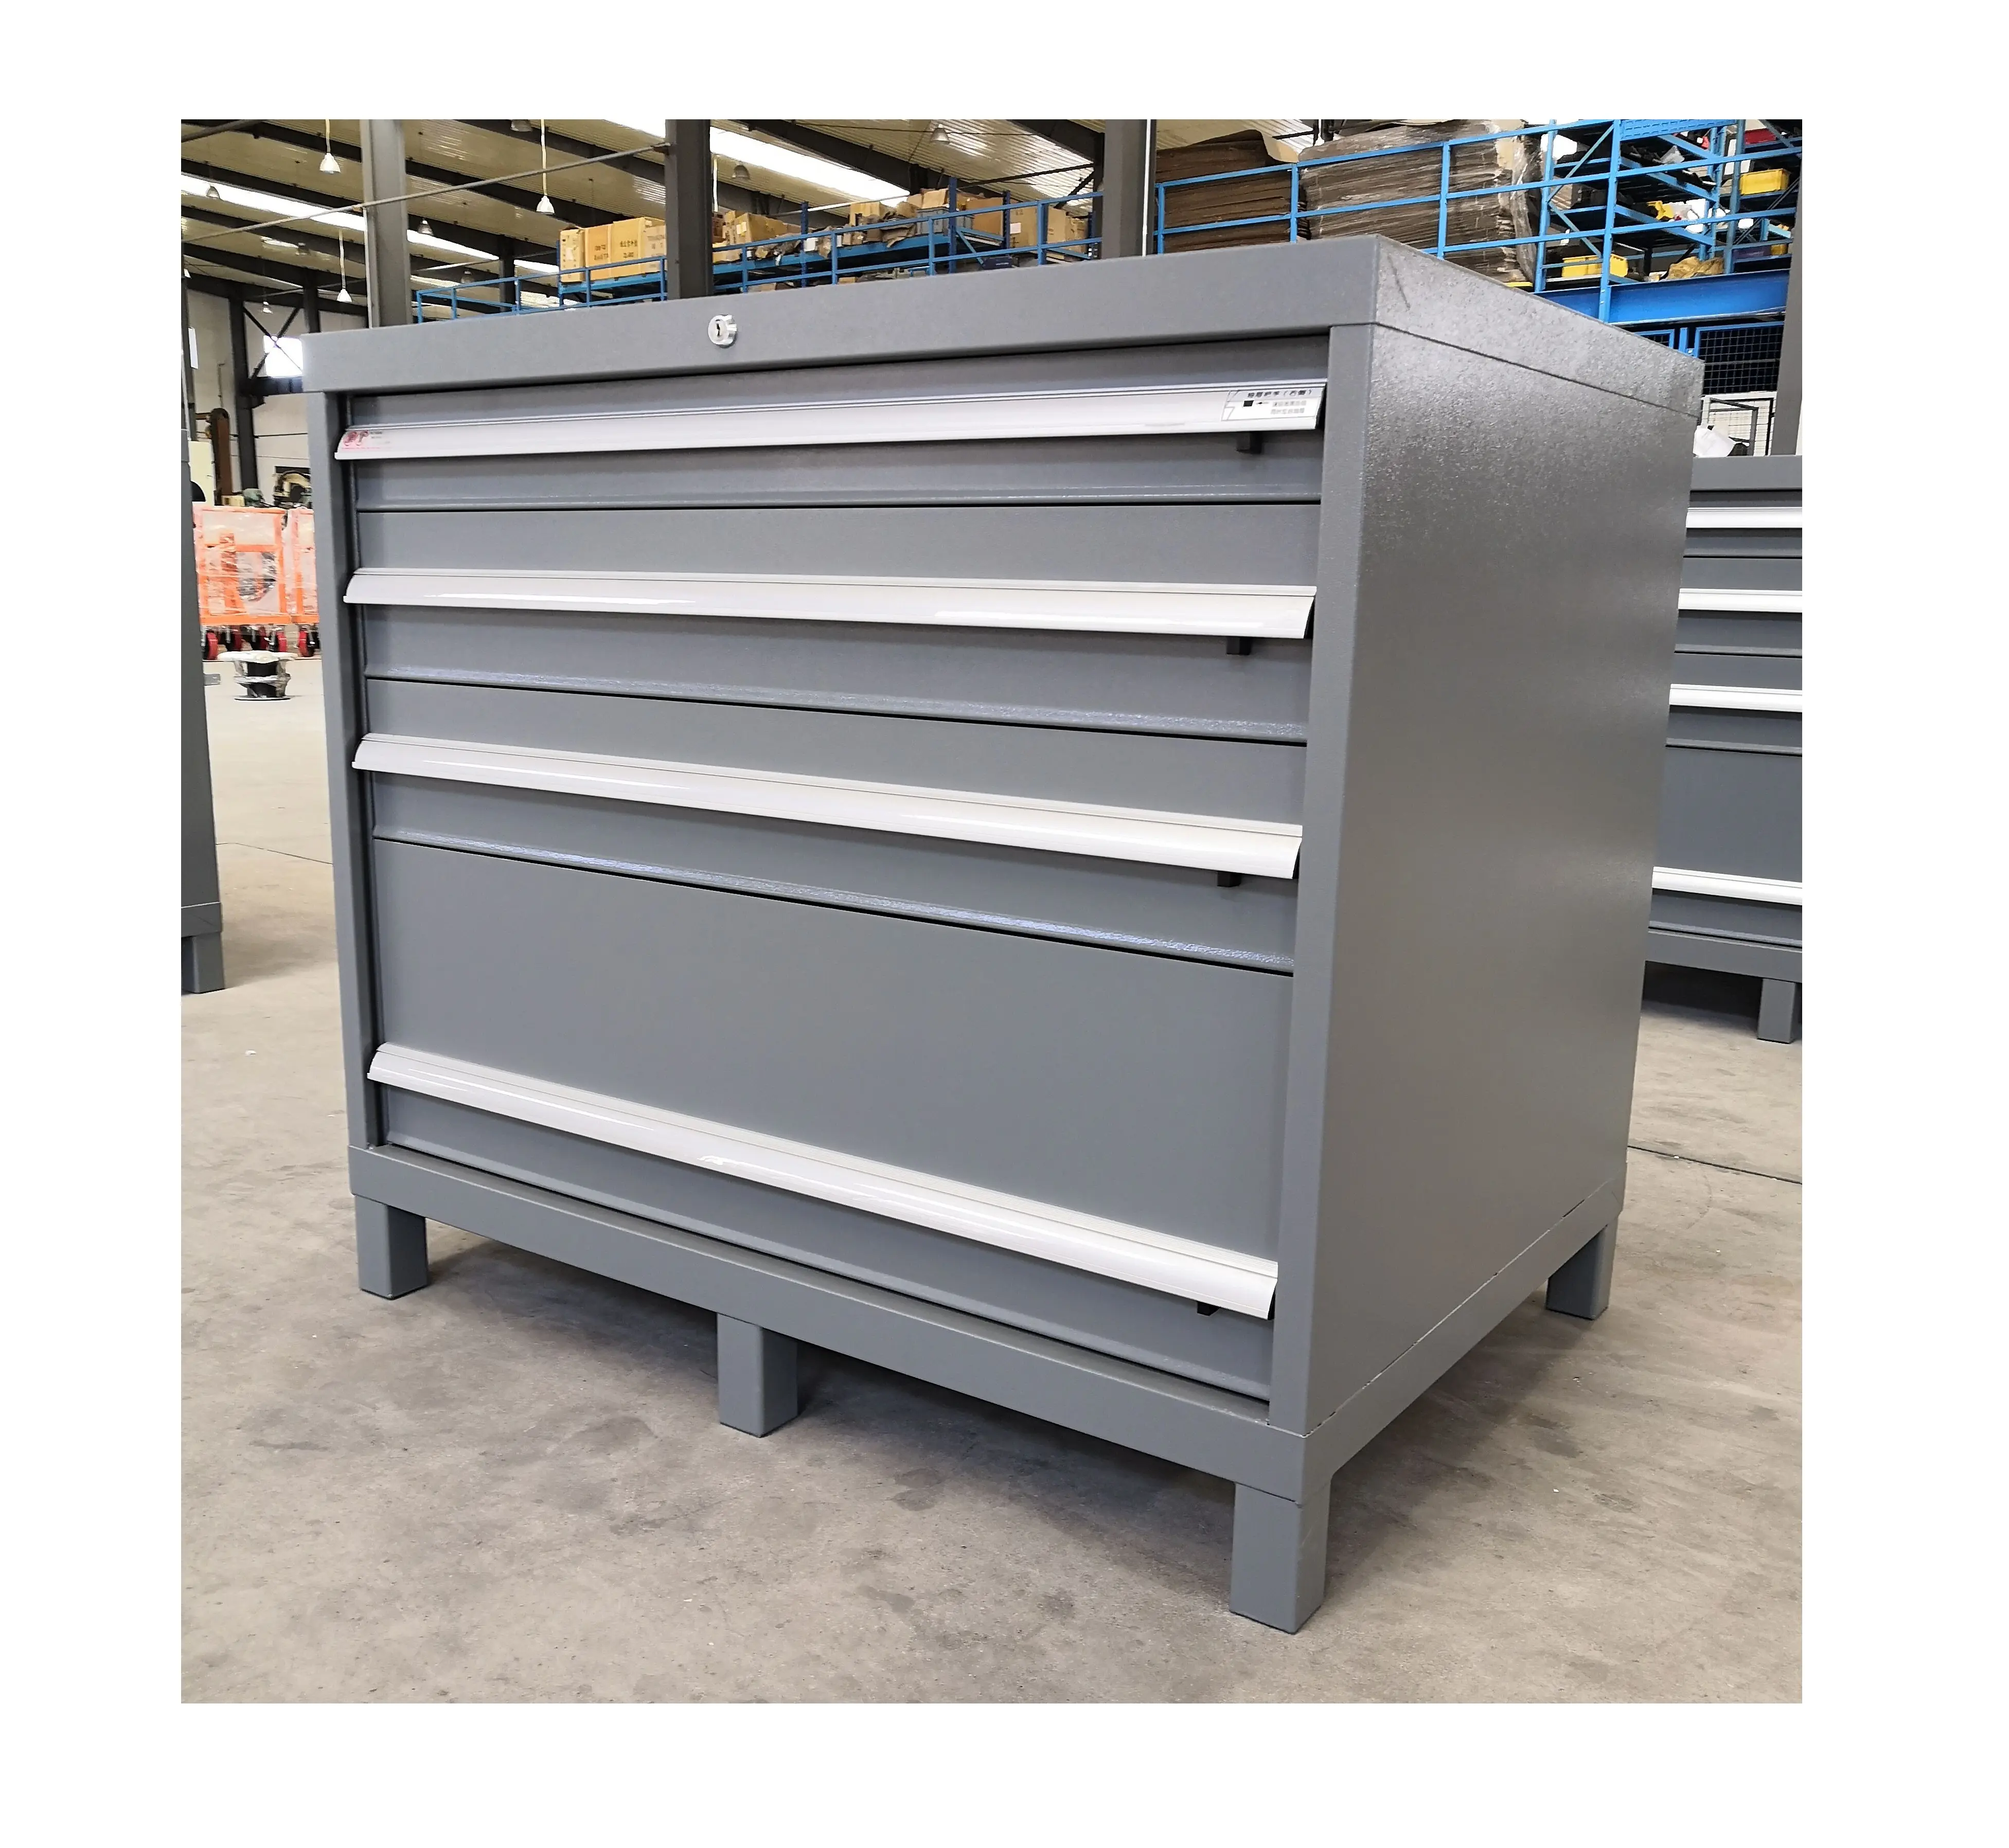 2020 I Più Nuovi e funzionale Metallo tool box cabinet